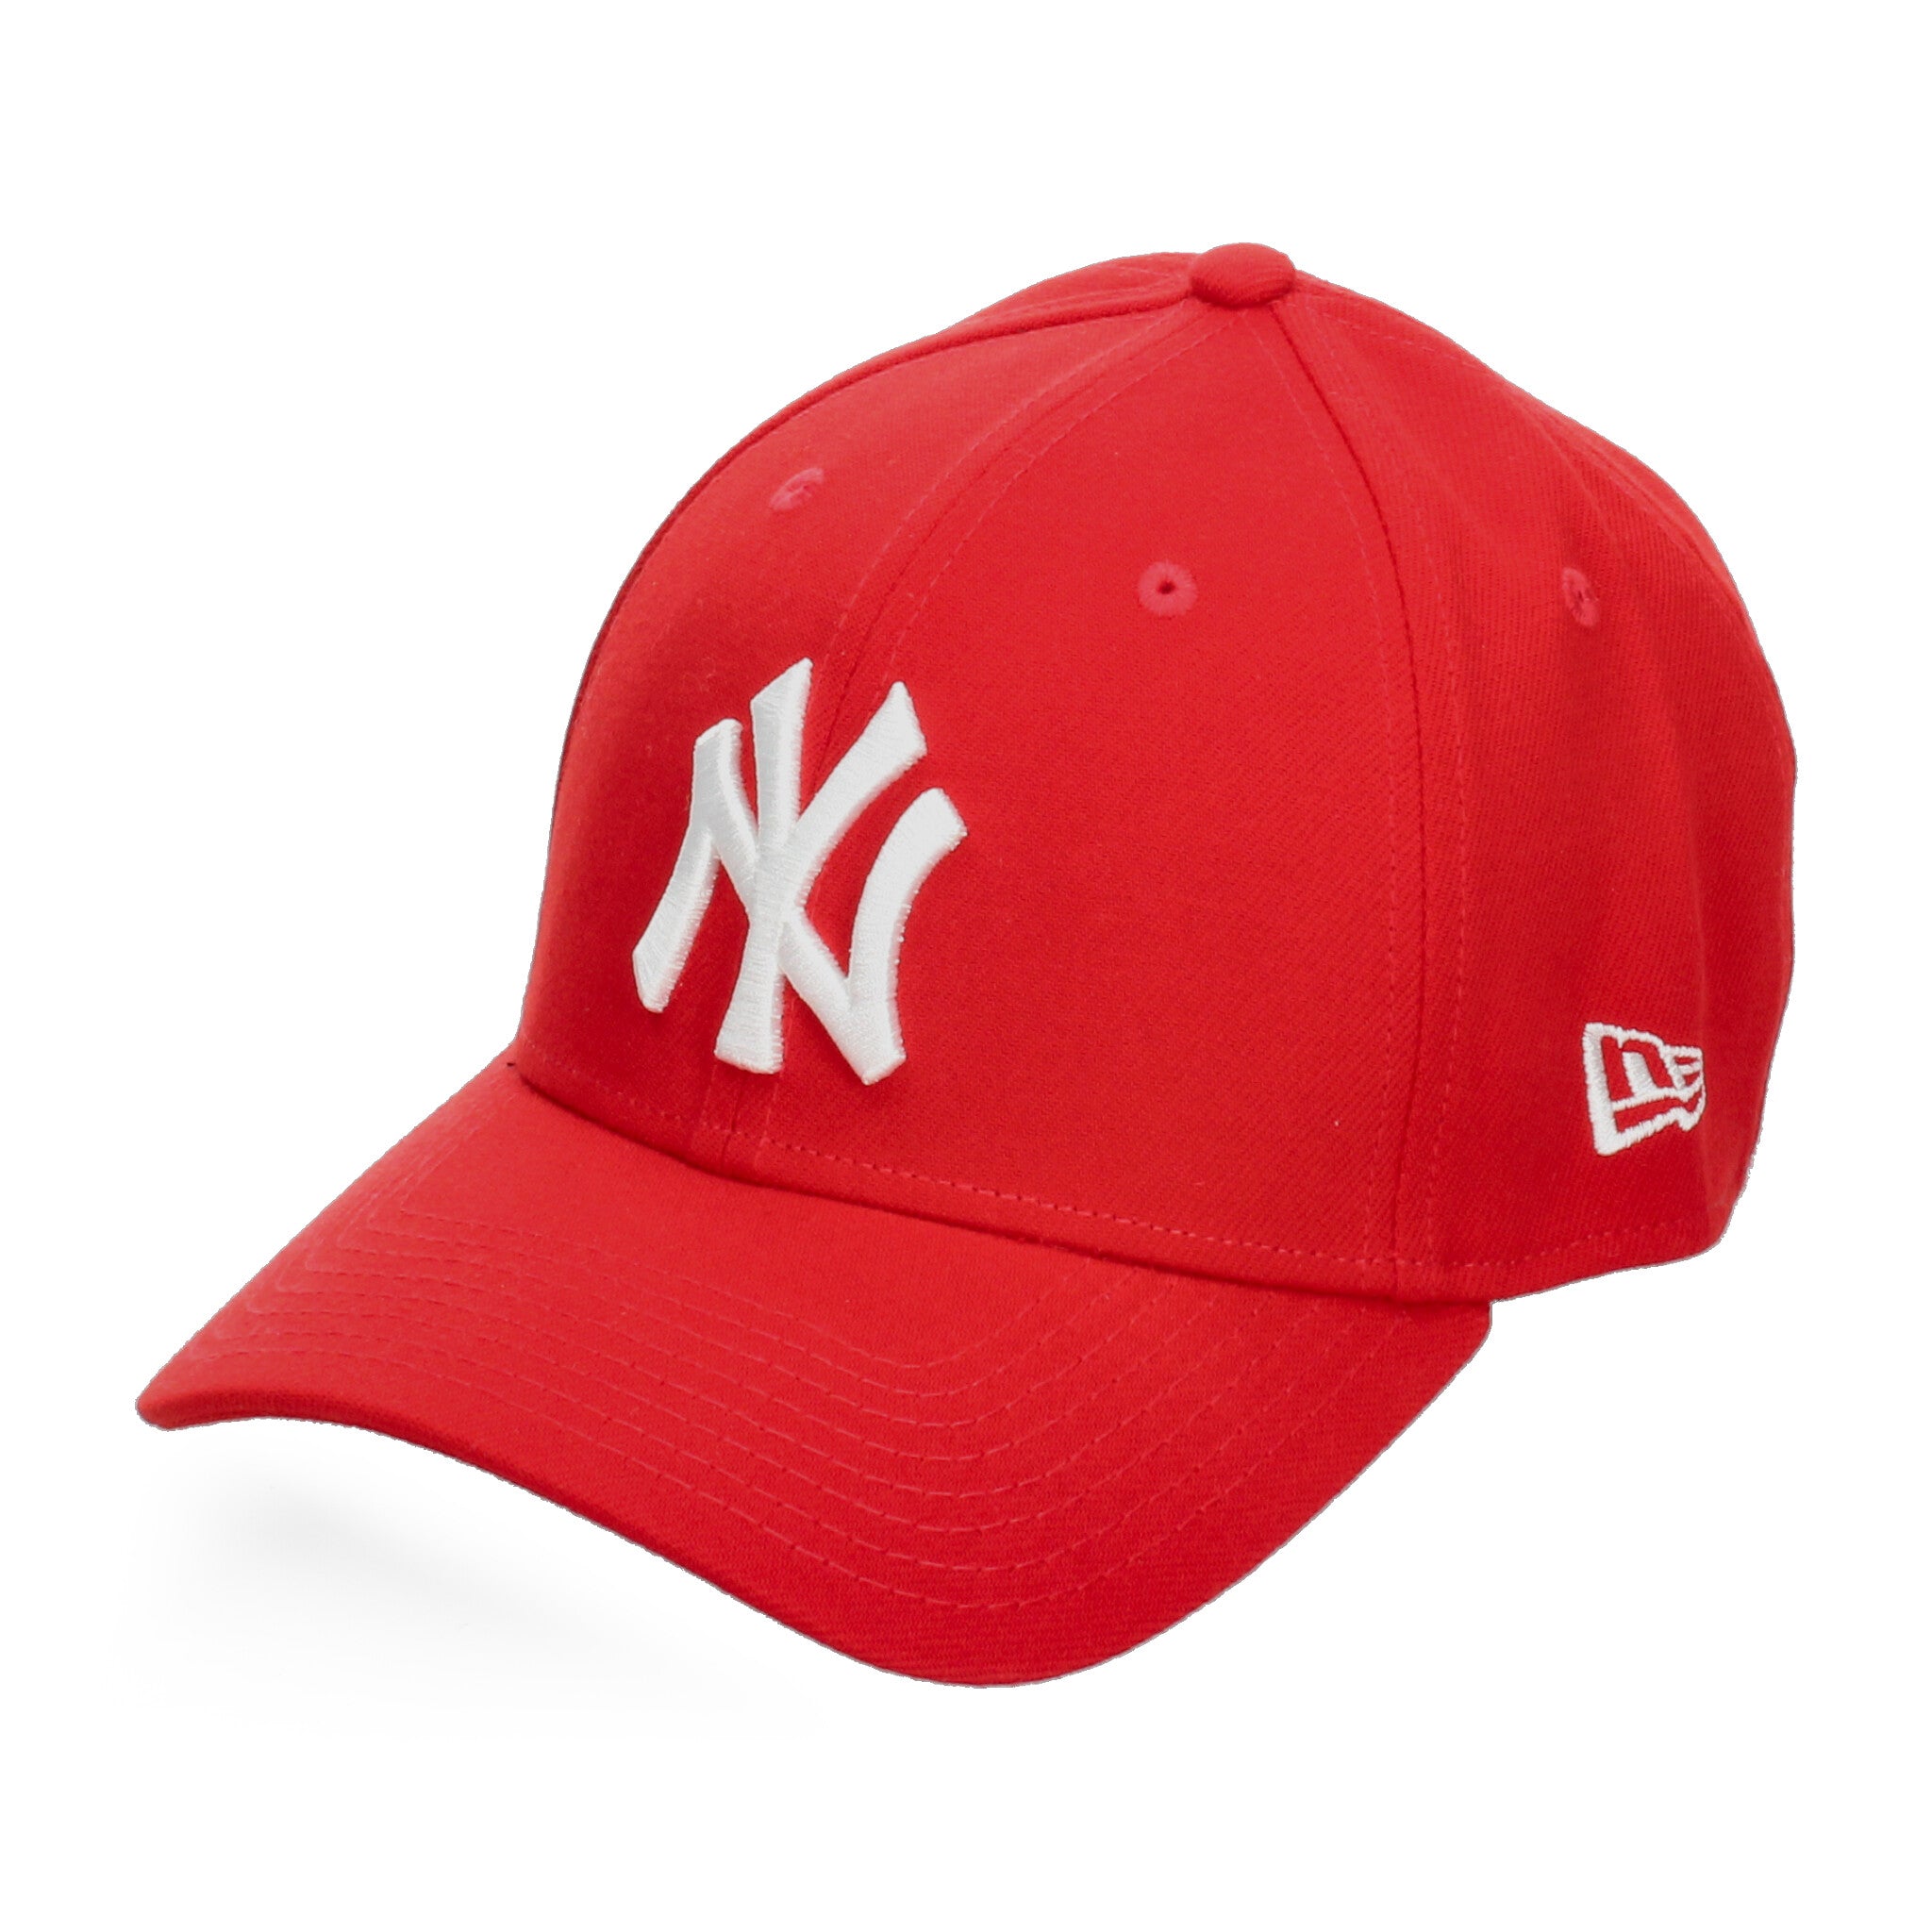 Gorra New Era Yankees Rojo [NWR72] NEW ERA 